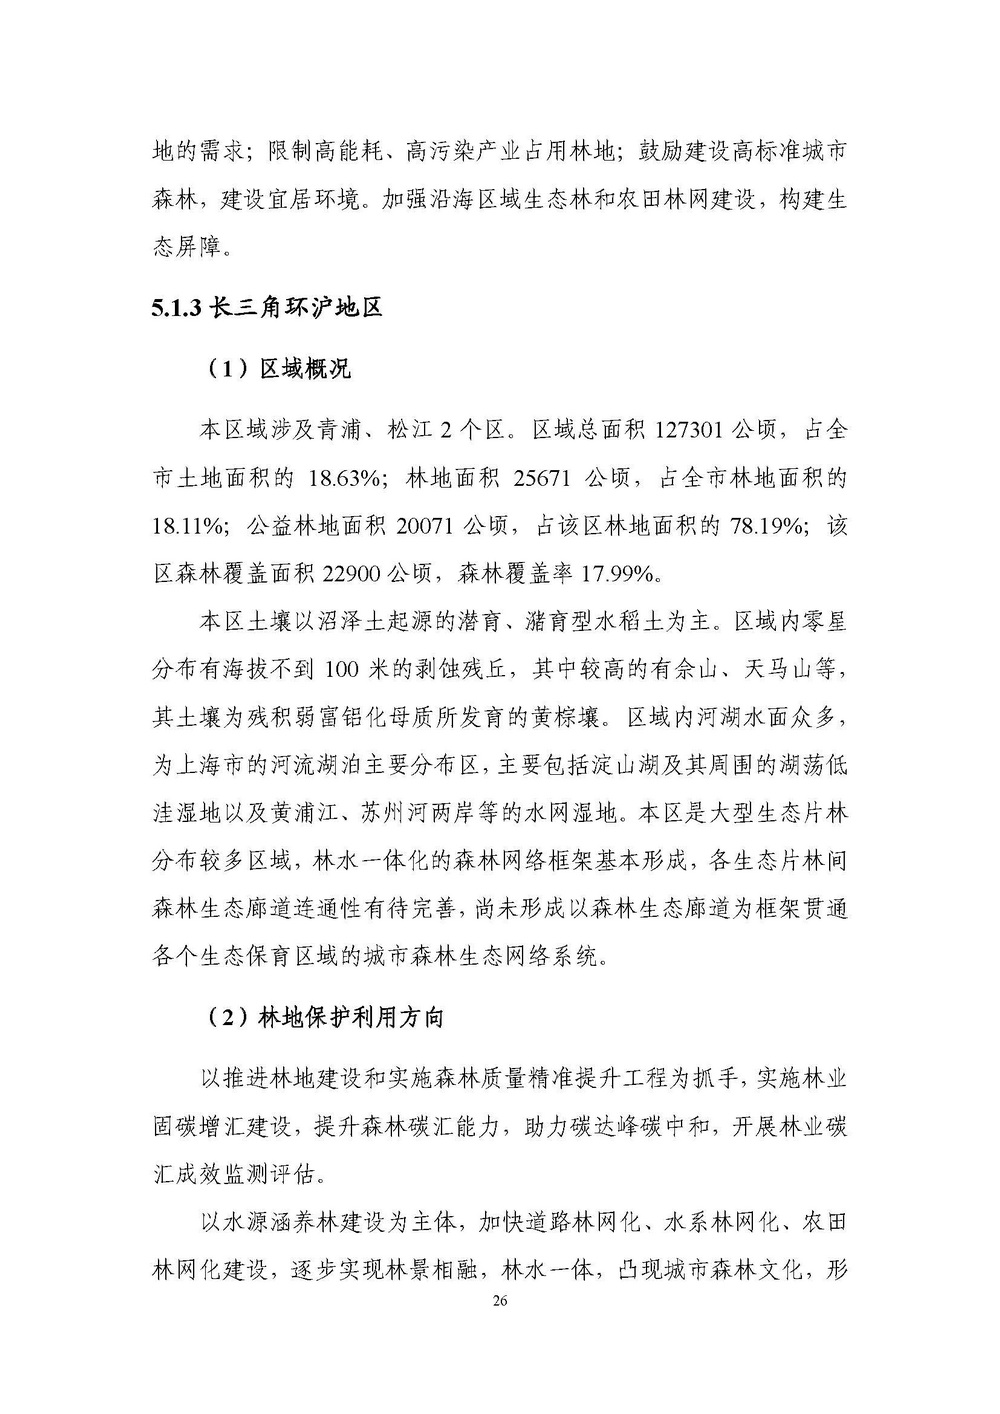 上海市森林和林地保护利用规划文本 公开稿 附图_页面_29.jpg